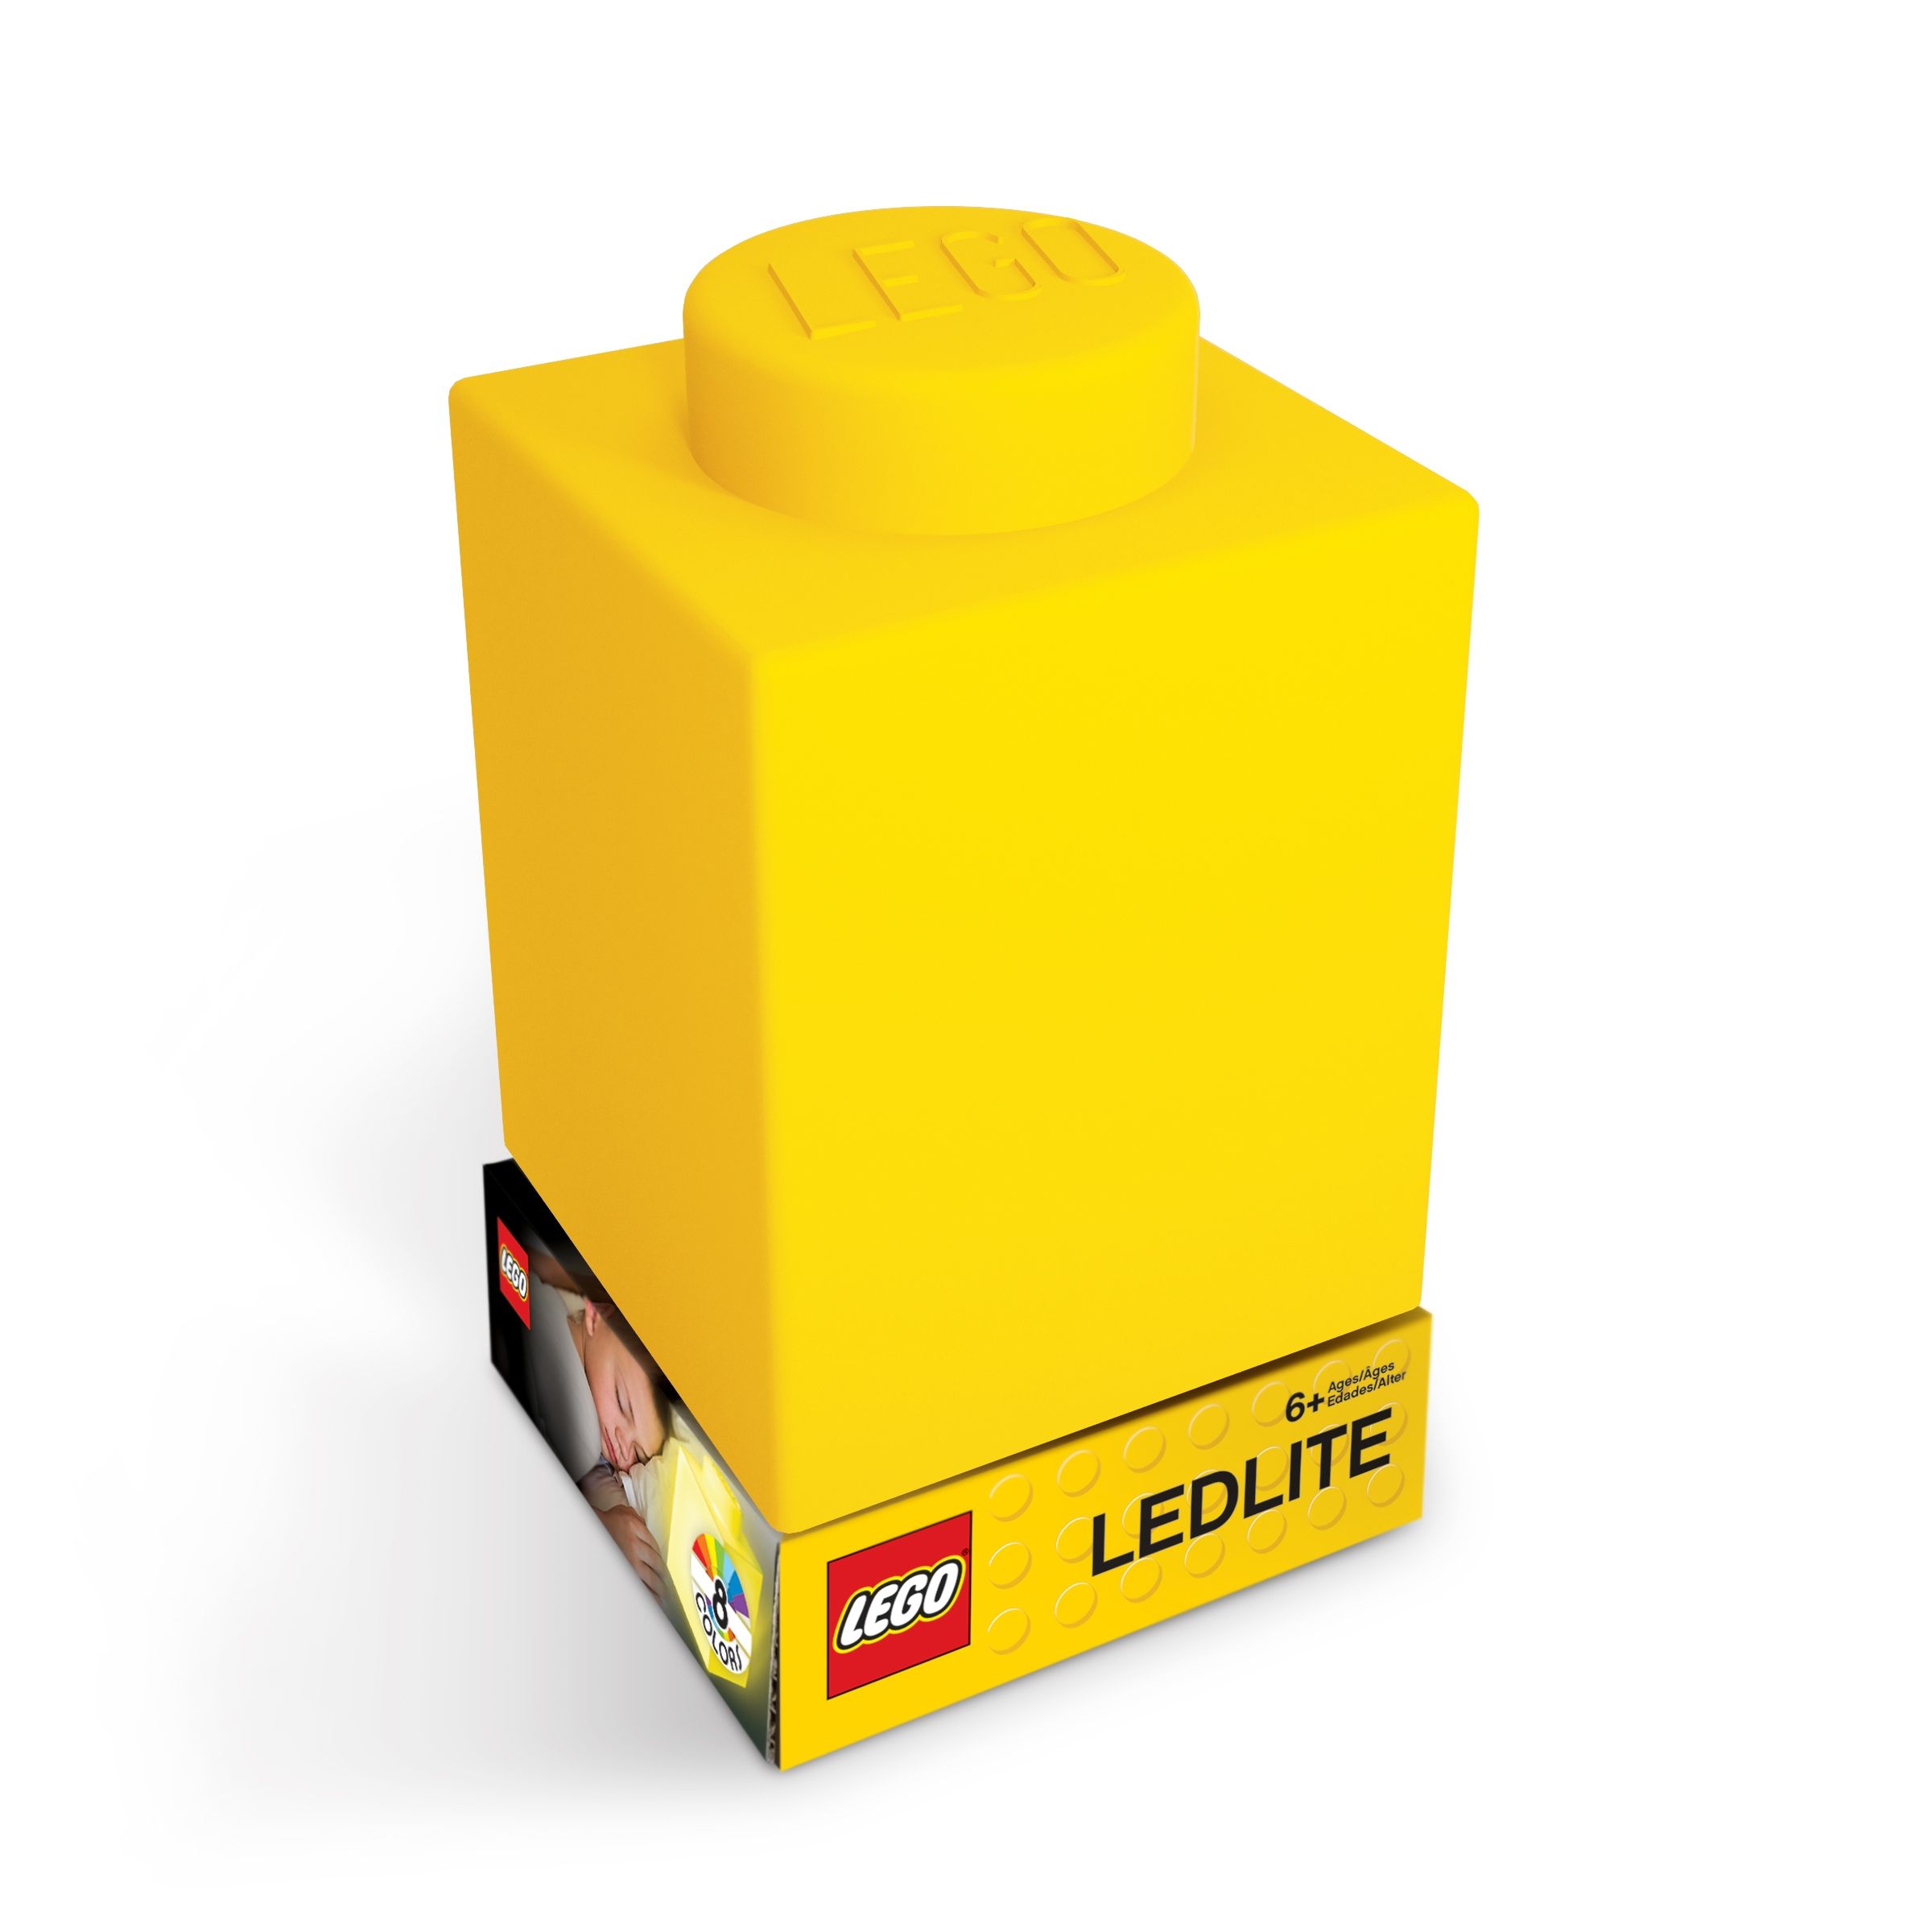 LEGO Gear 5007234 1x1 Stein-Nachtlicht – Gelb LEGO_5007234_alt1.jpg